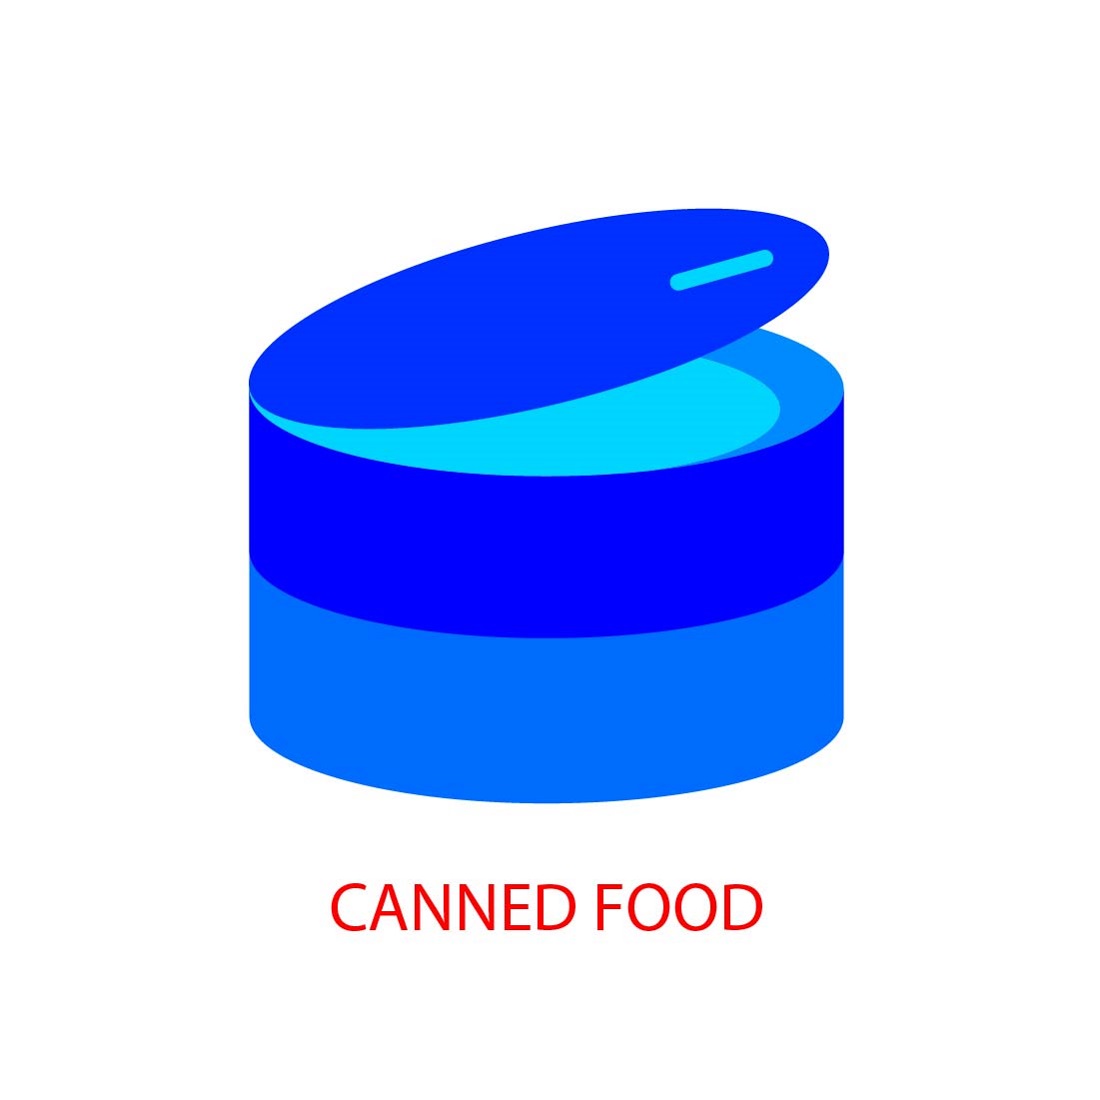 modern food icon set editable and resizable 06 522